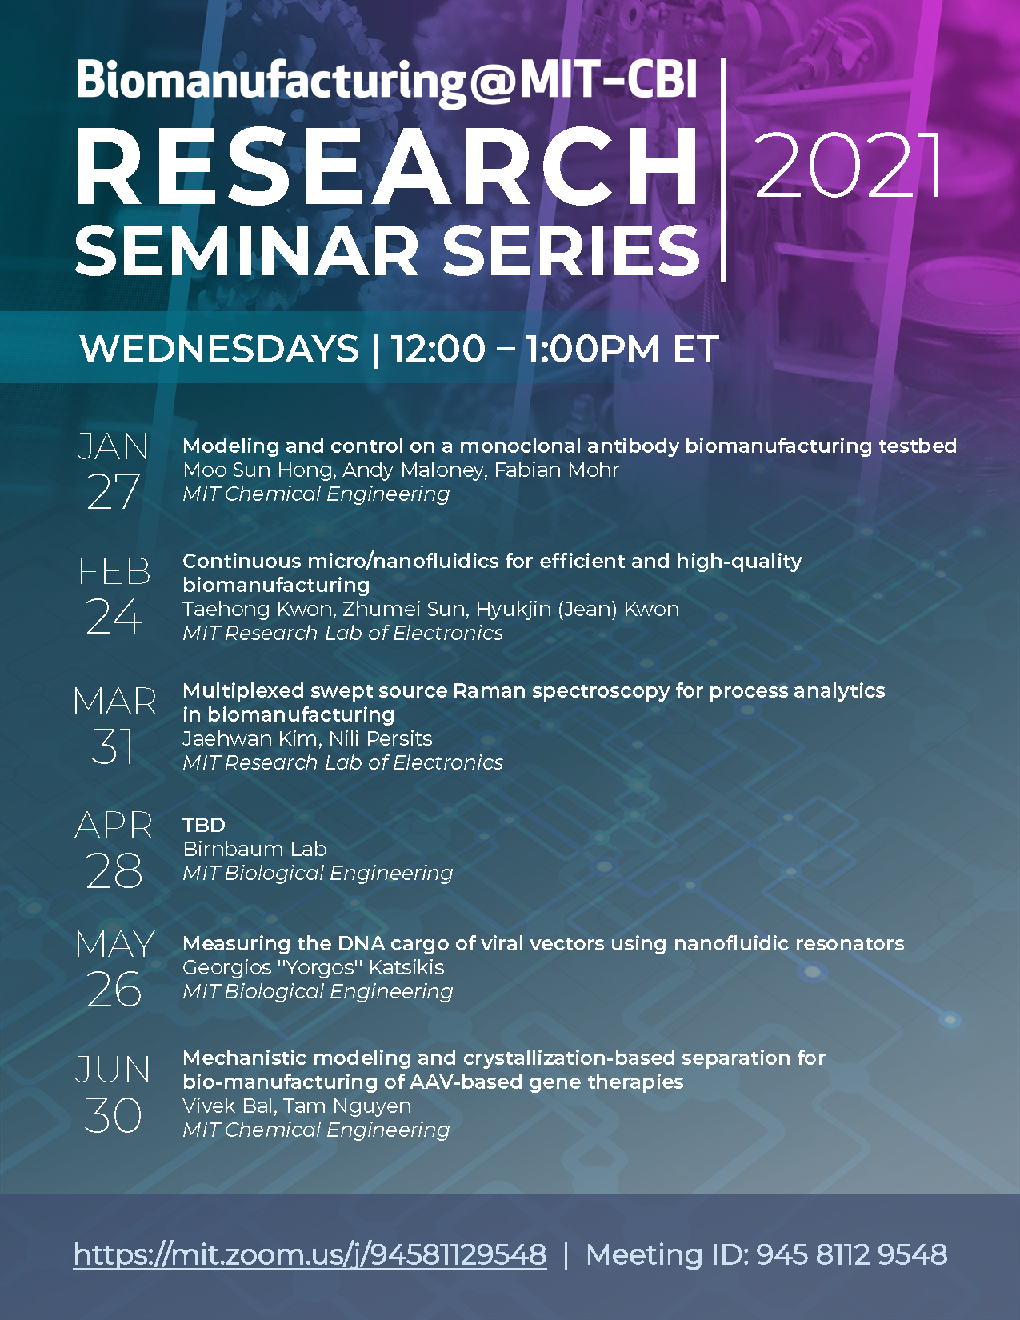 Biomanufacturing@MIT-CBI Research Seminar Series